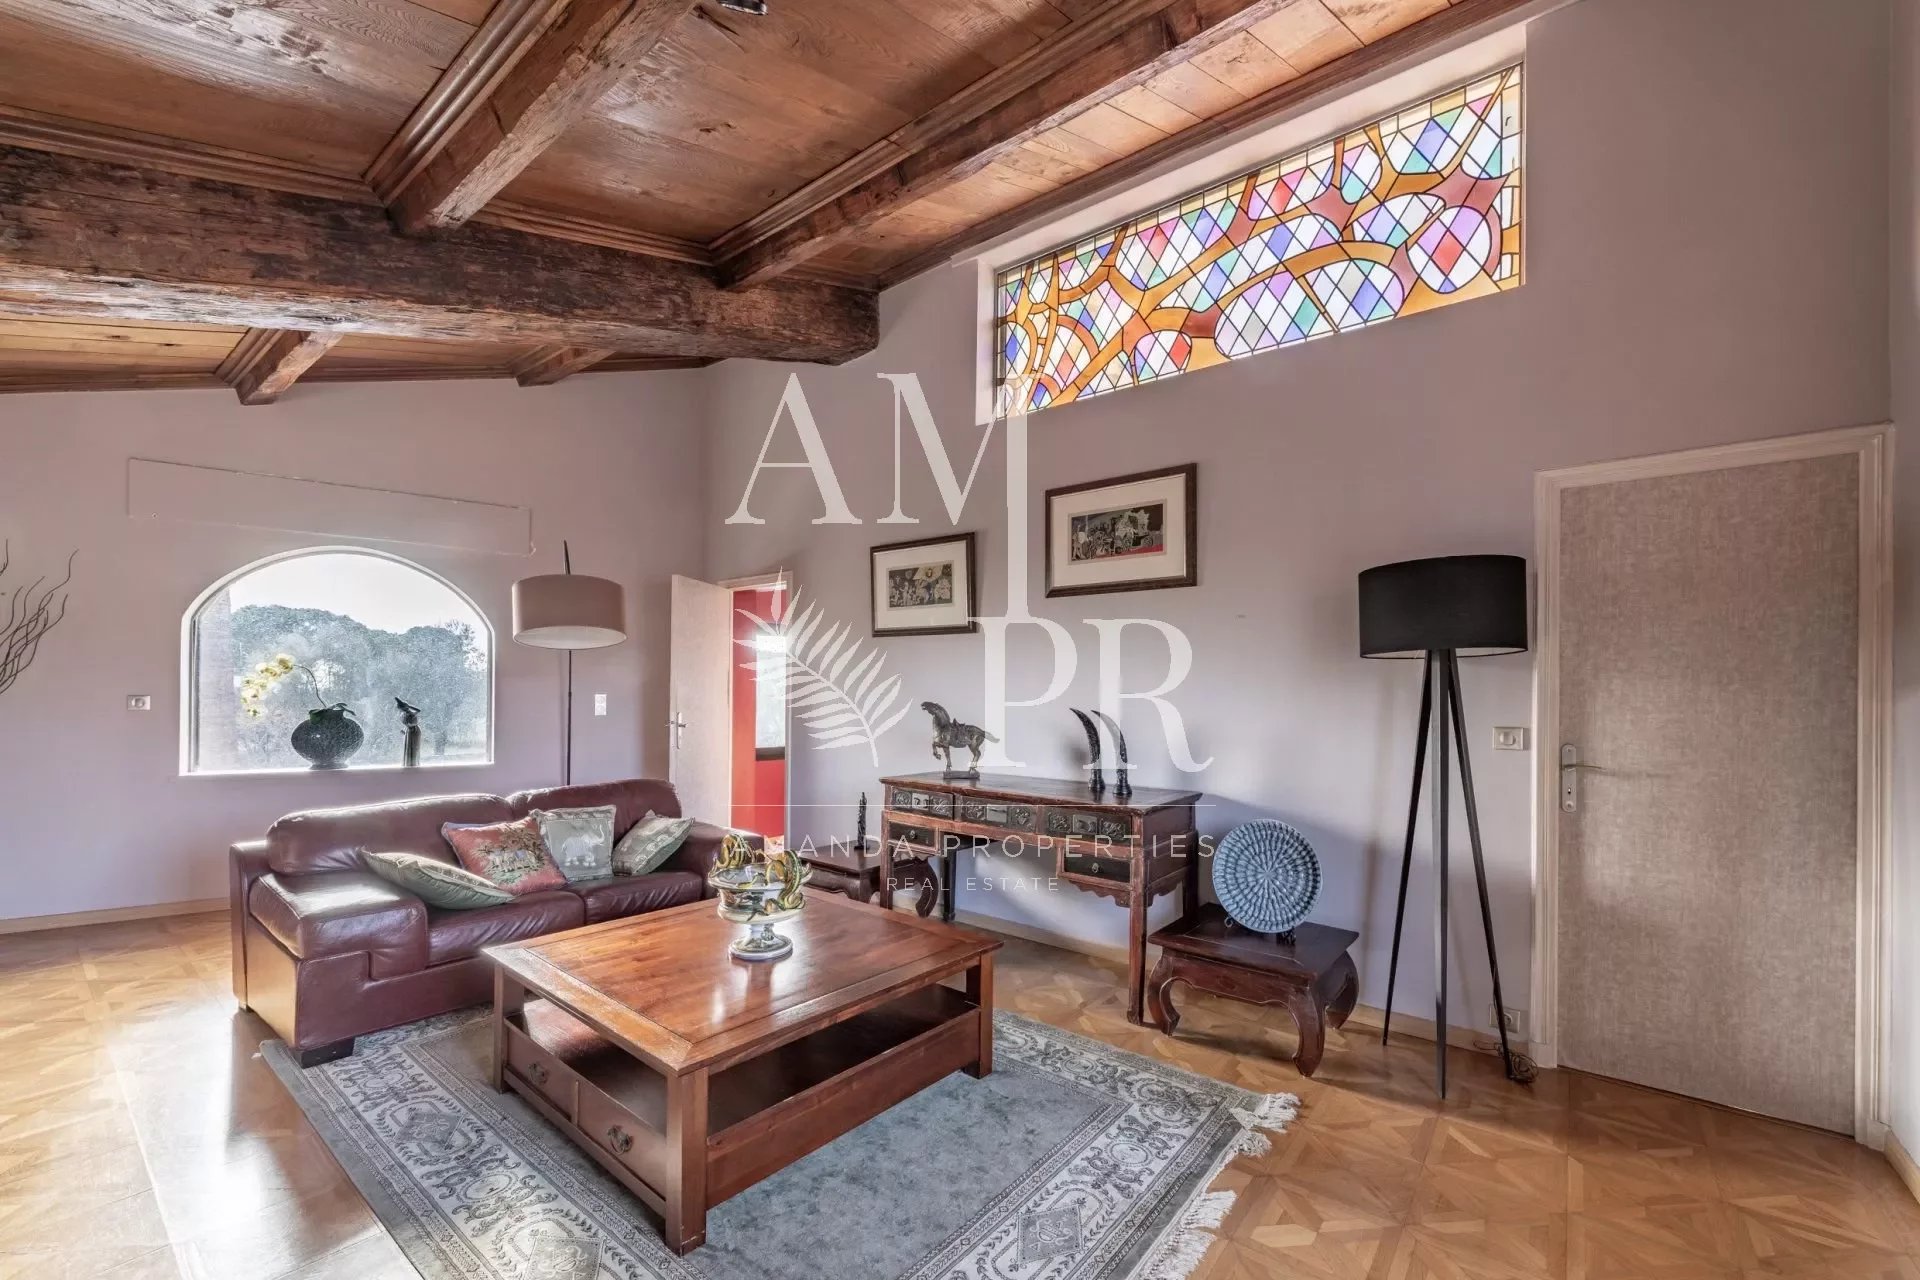 Living-room Tile Wooden floor